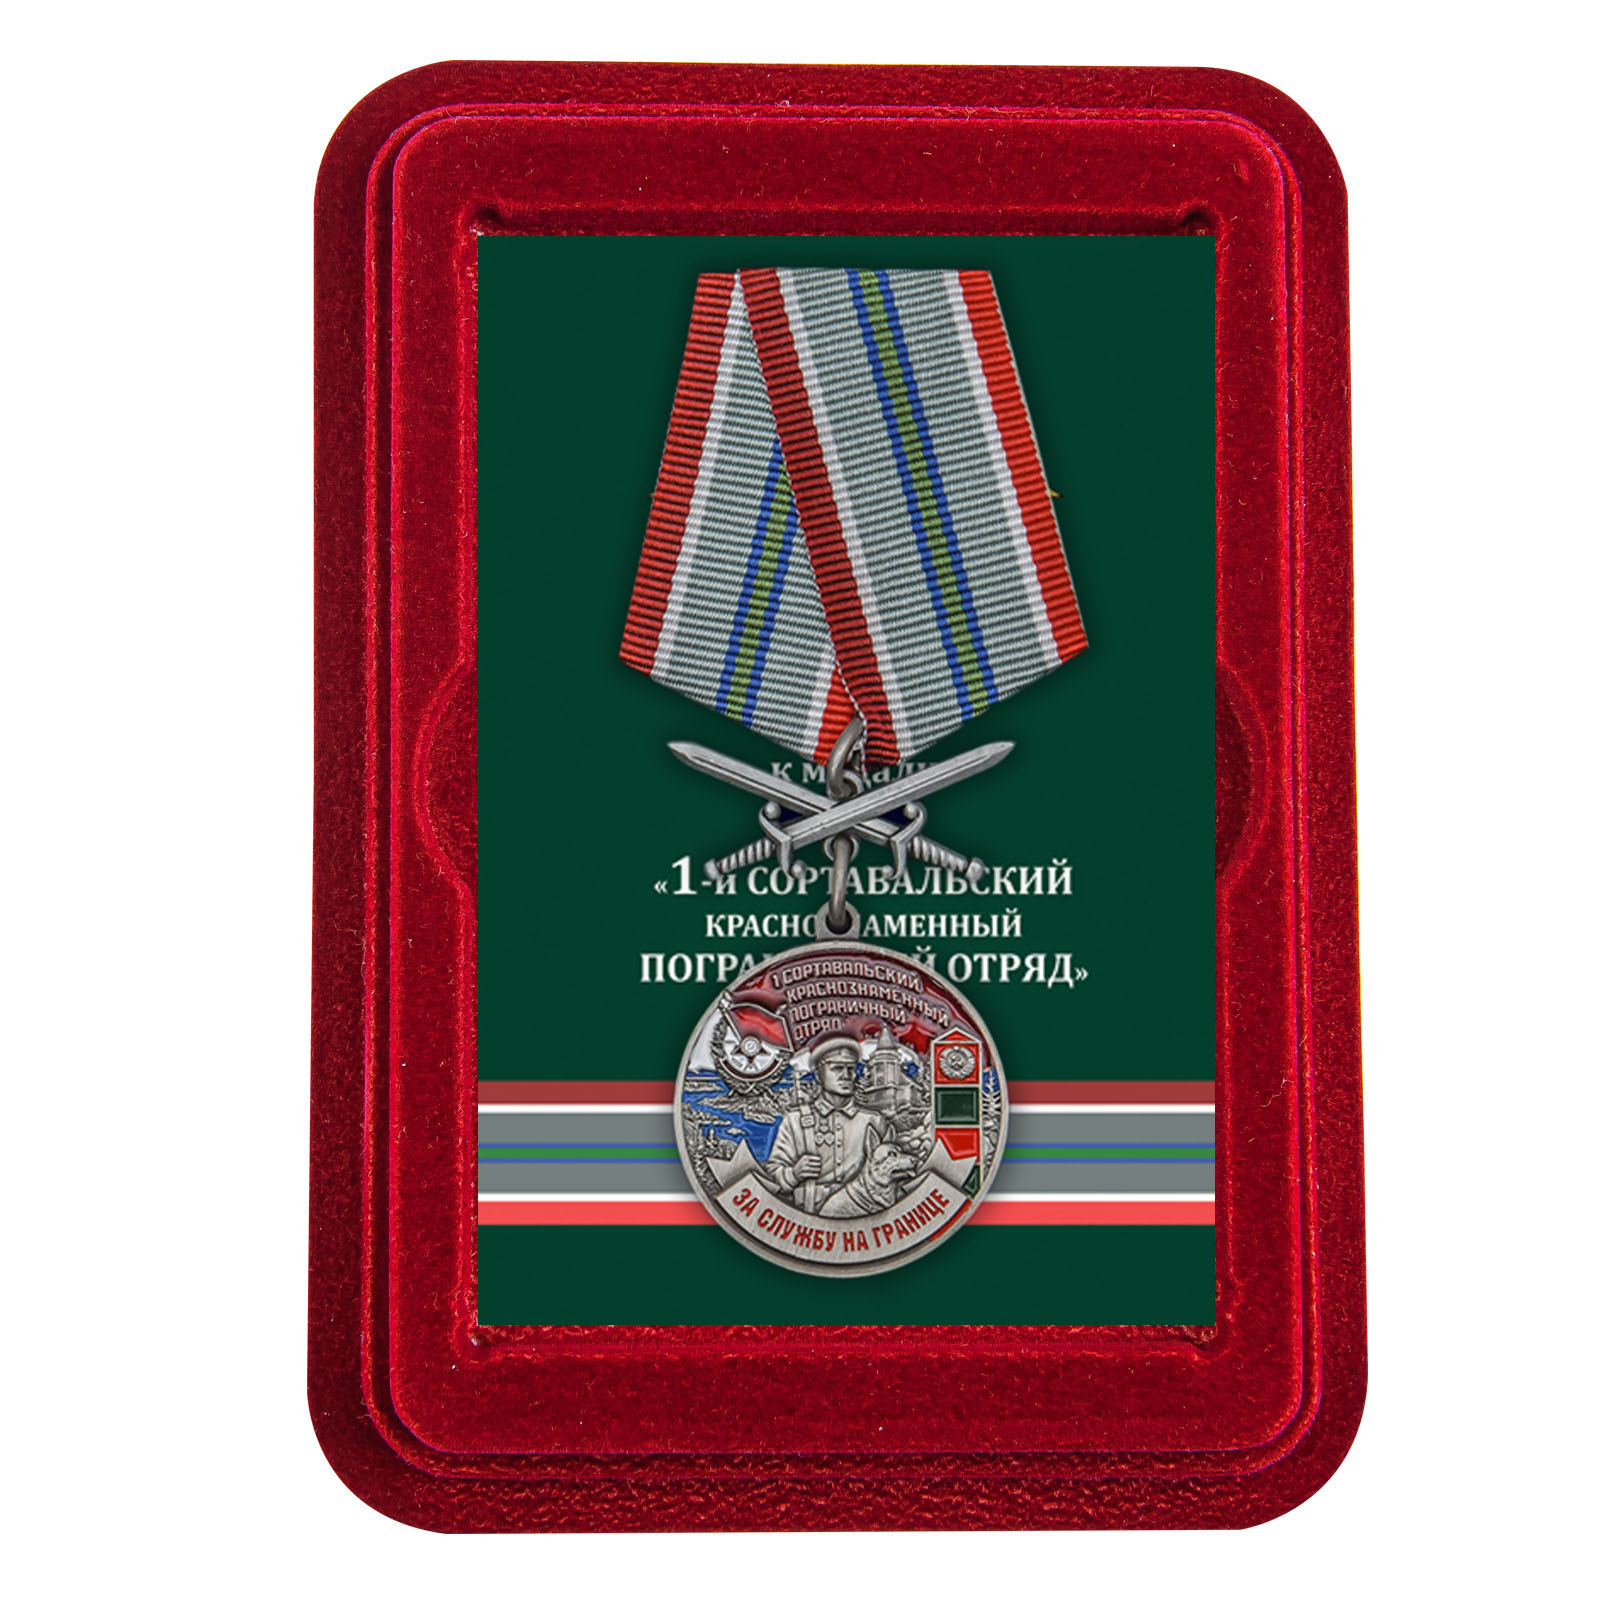 Купить медаль За службу в Сортавальском пограничном отряде онлайн